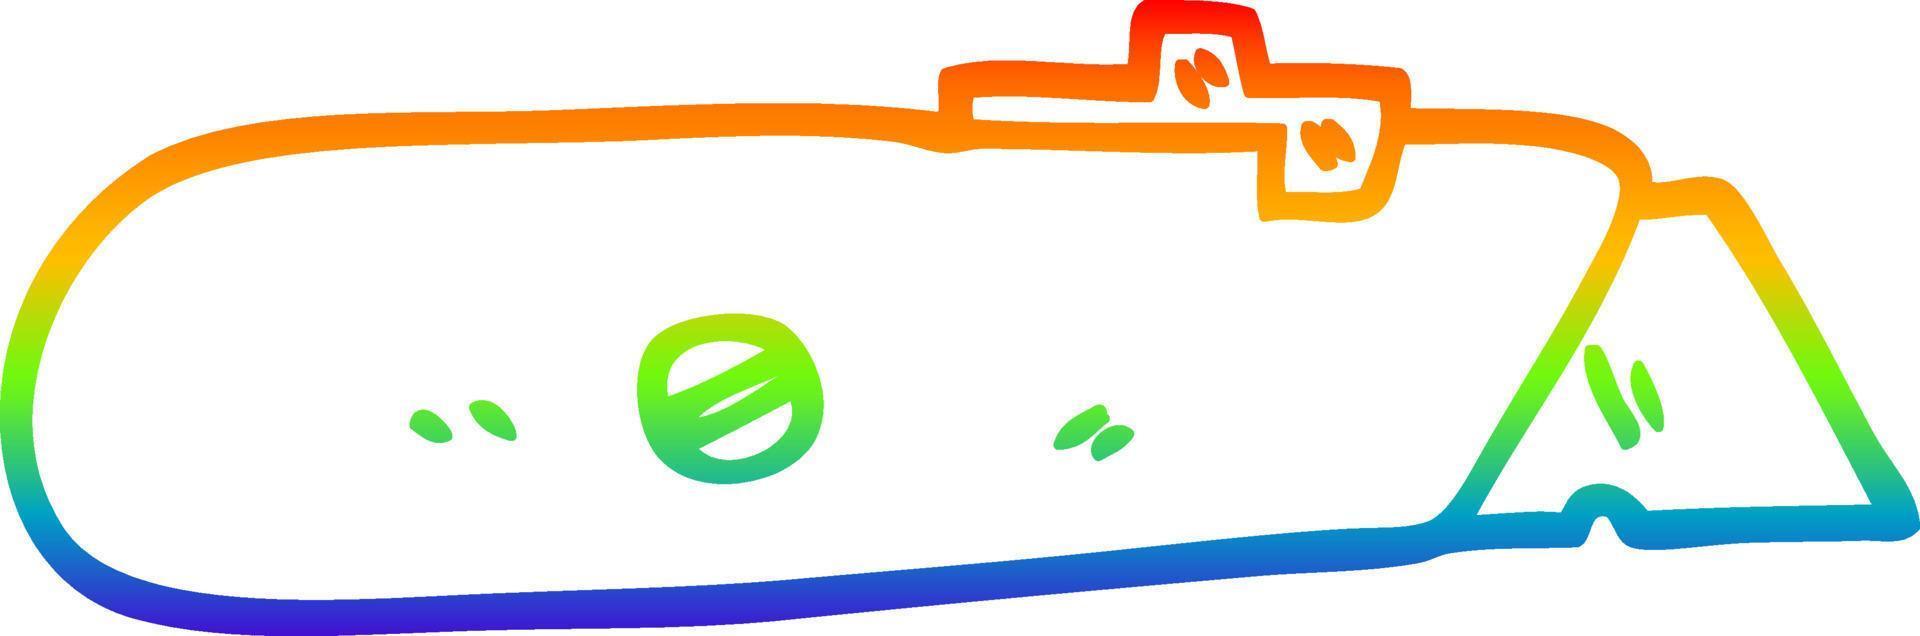 faca de trabalho de desenho de desenho de linha de gradiente de arco-íris vetor